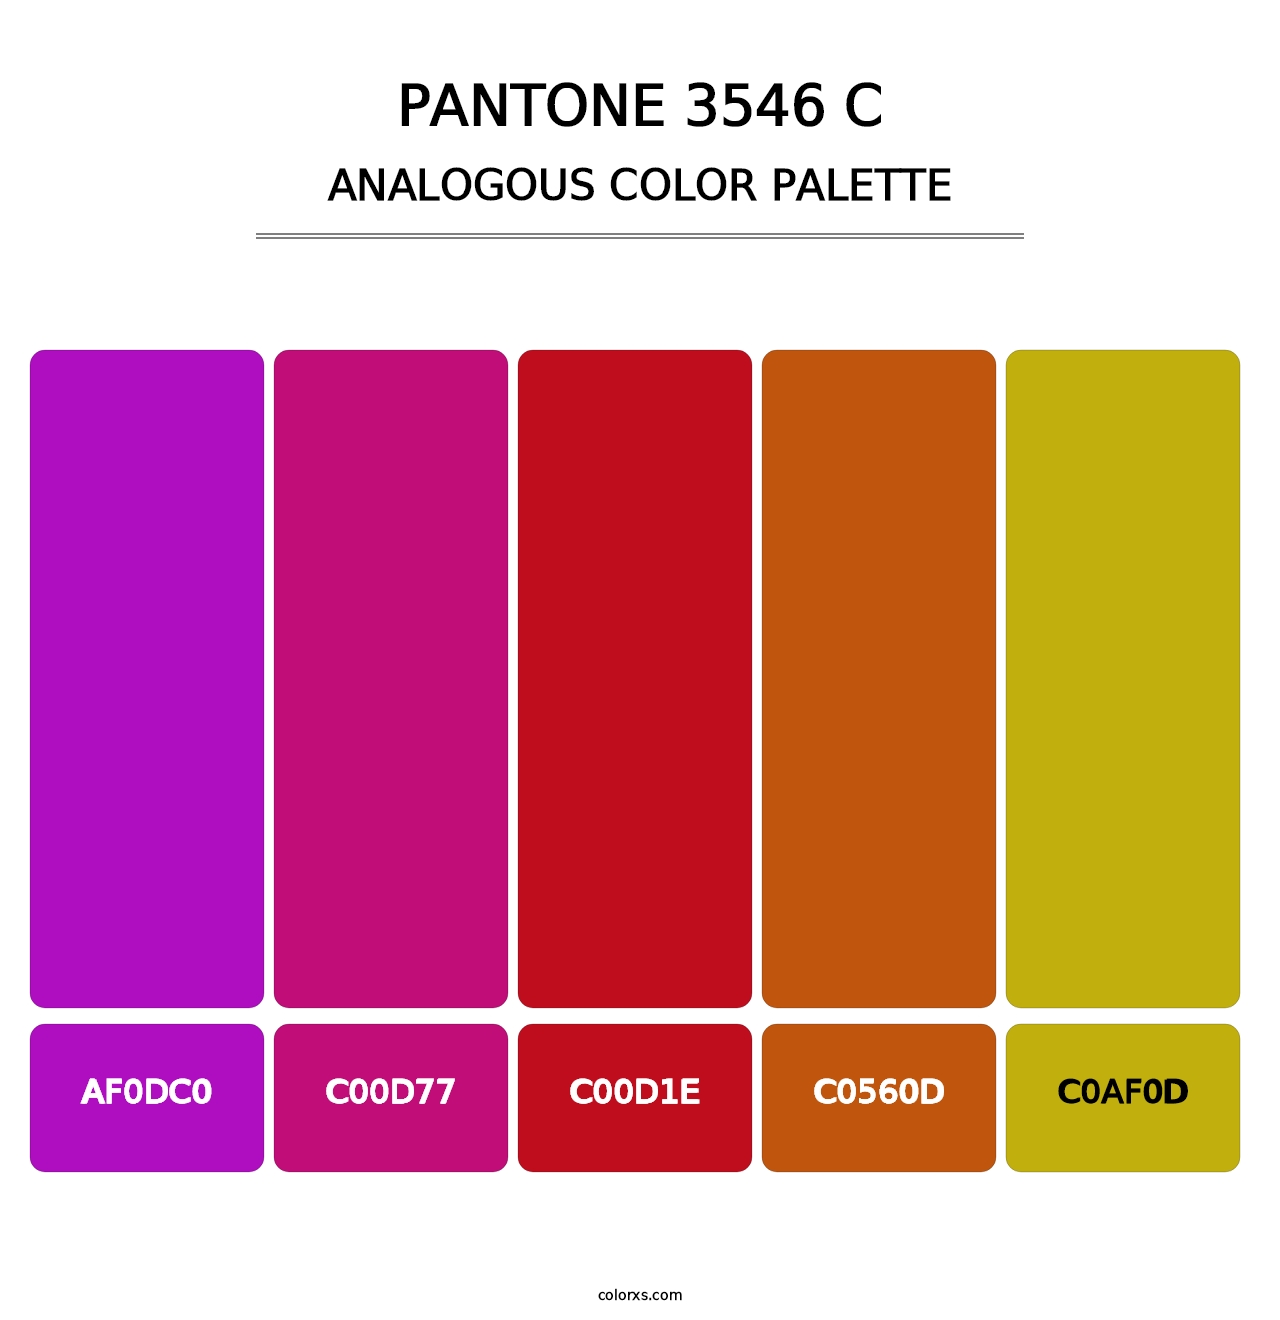 PANTONE 3546 C - Analogous Color Palette